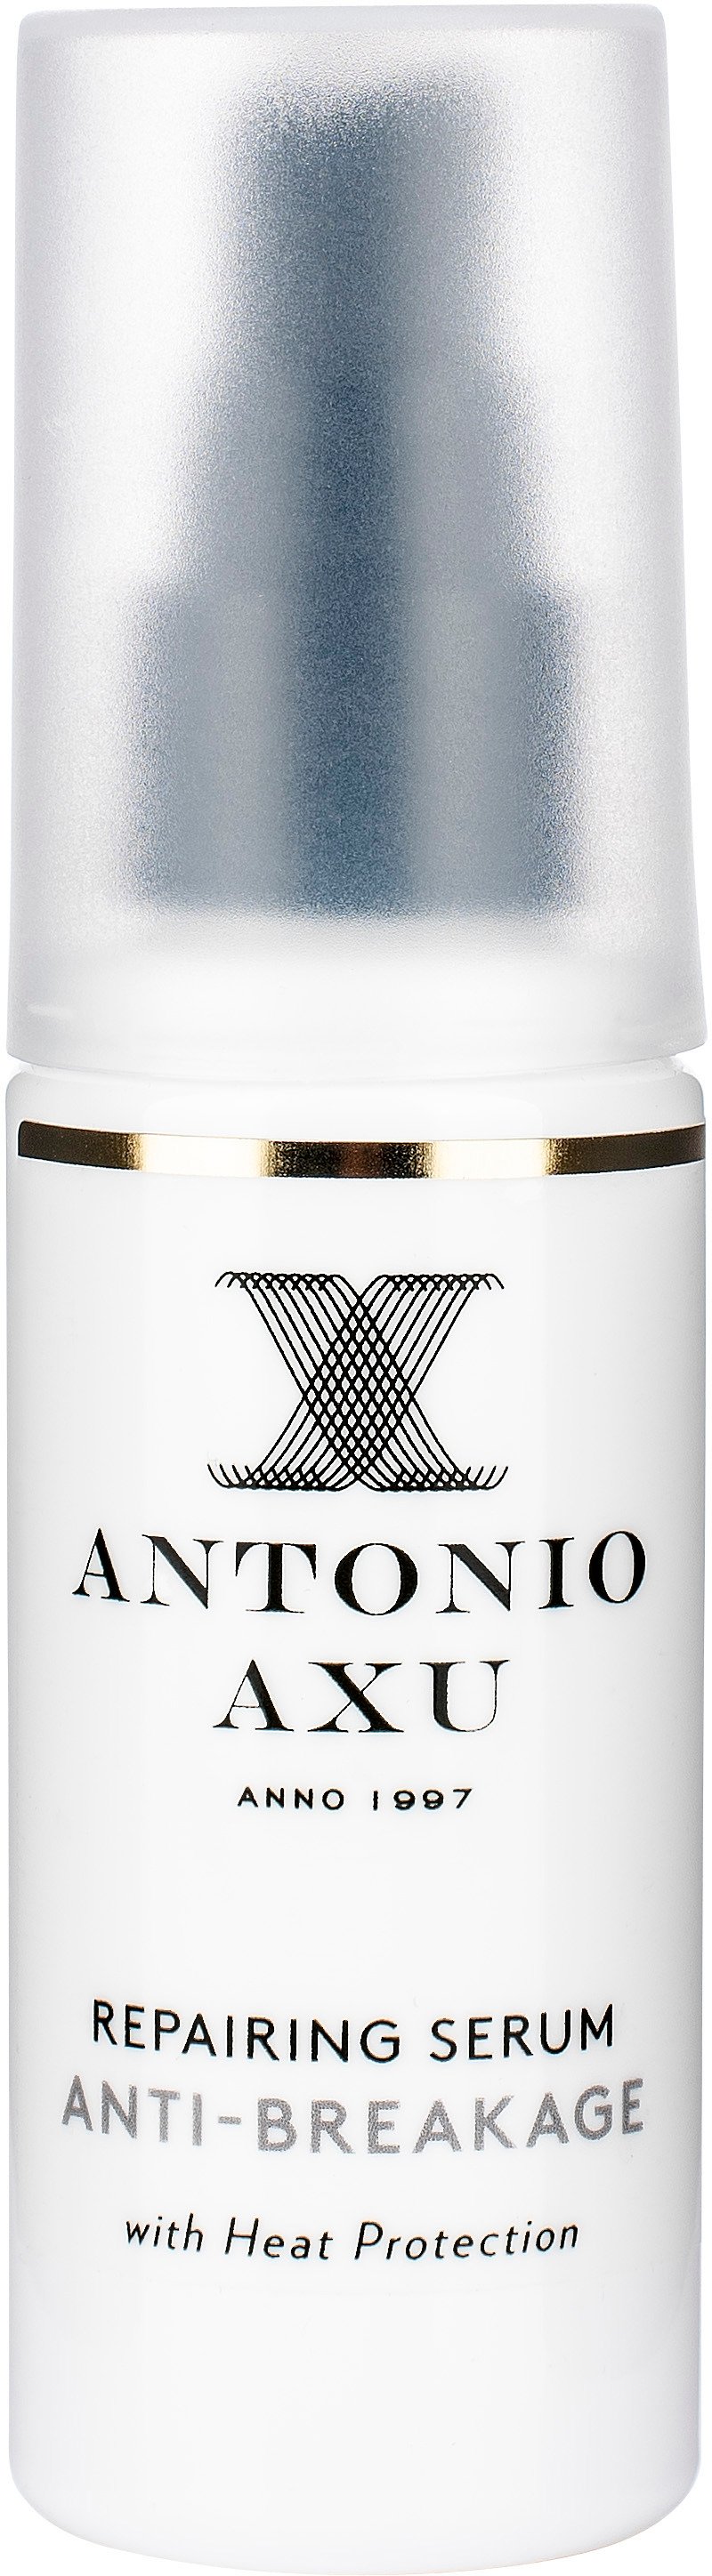 Antonio Axu Repairing Serum Anti Breakage 50 ml